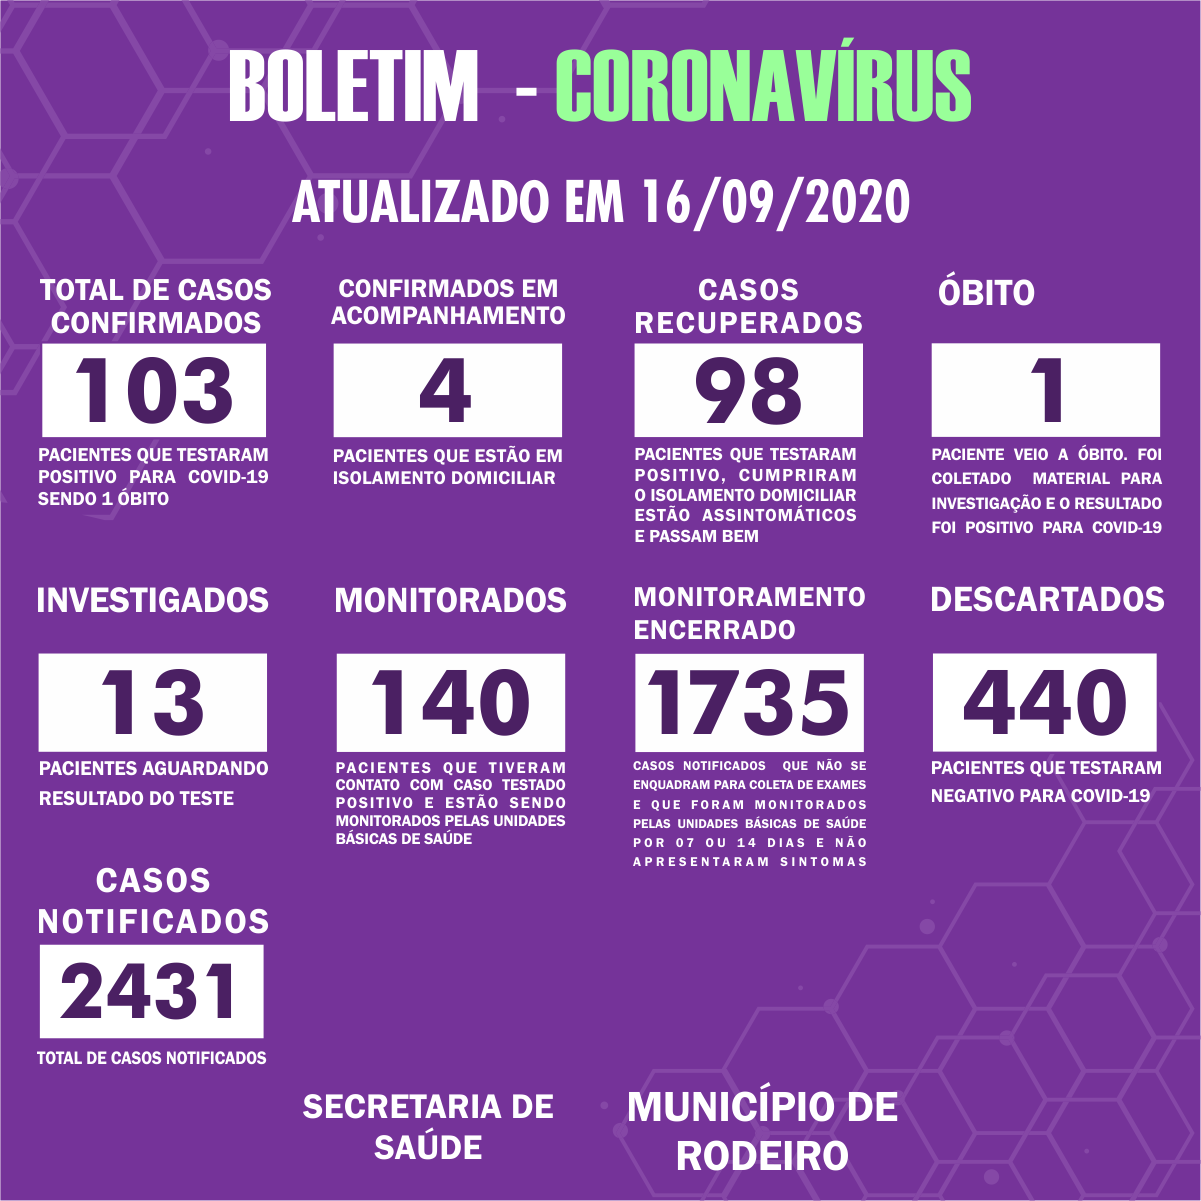 Boletim Epidemiológico do Município de Rodeiro sobre coronavírus, atualizado em 16/09/2020